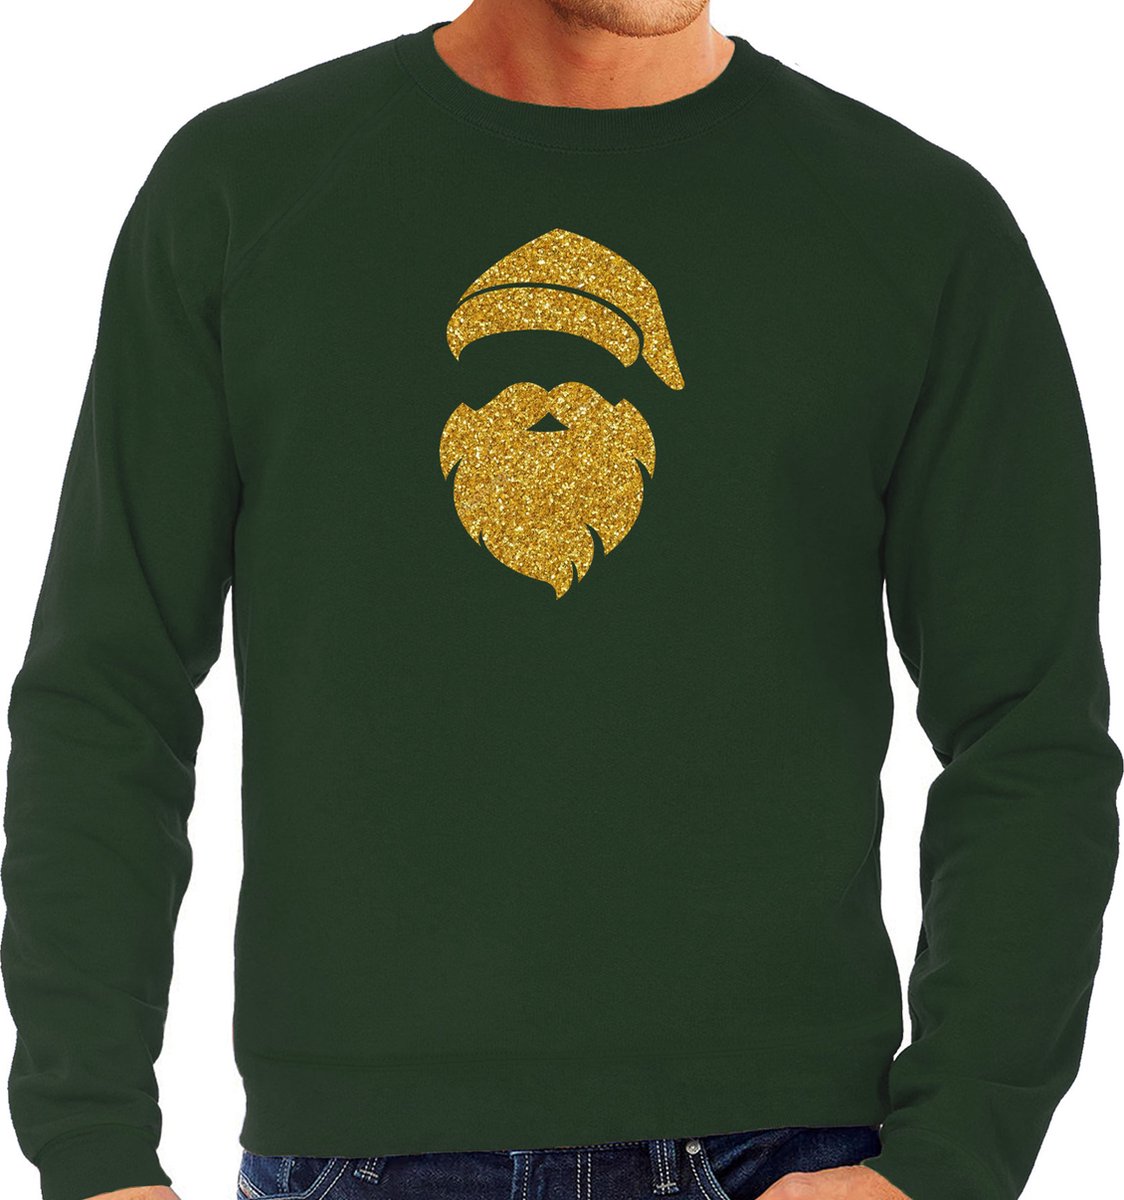 Kerstman hoofd Kerst trui - groen met gouden glitter bedrukking - heren - Kerst sweaters / Kerst outfit S